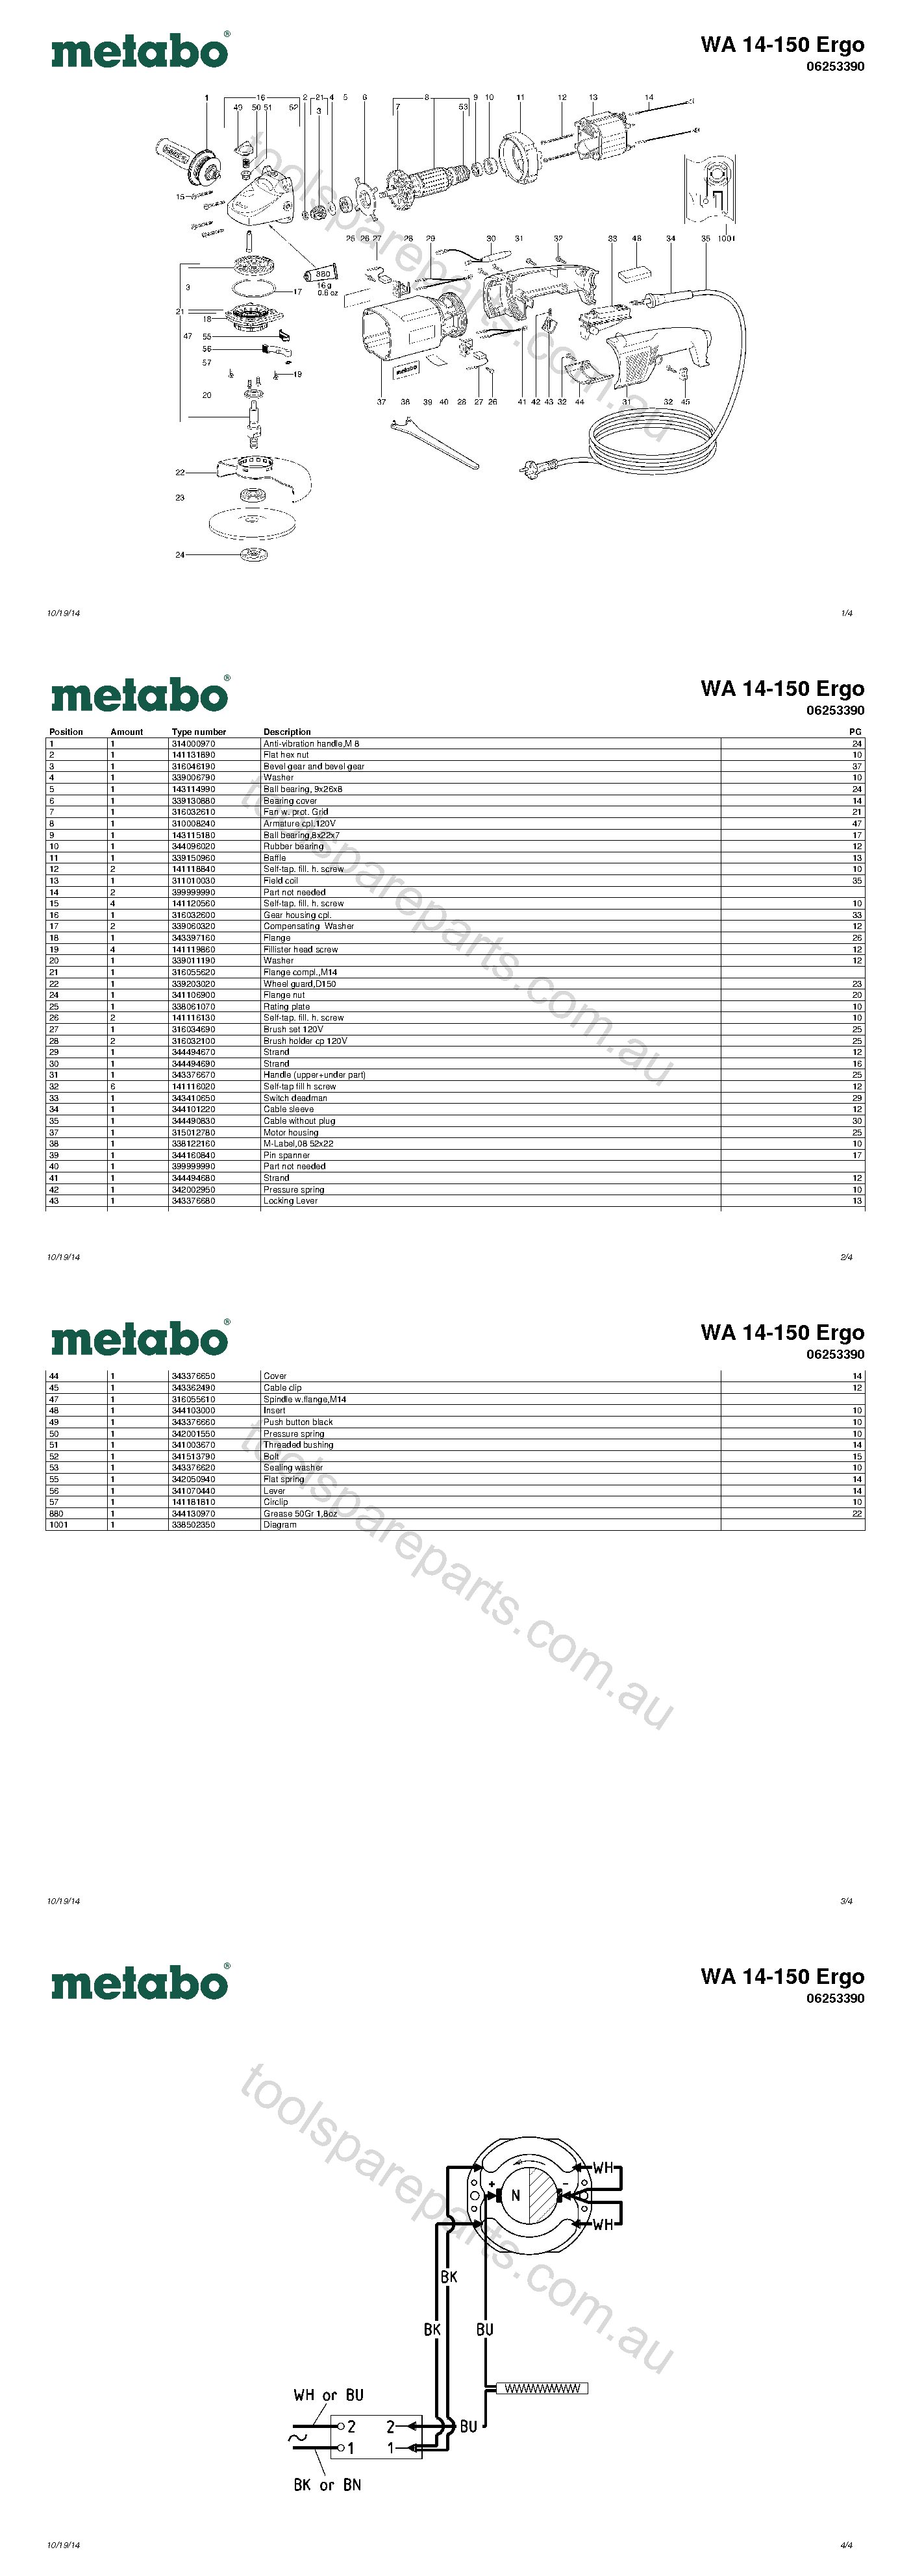 Metabo WA 14-150 Ergo 06253390  Diagram 1